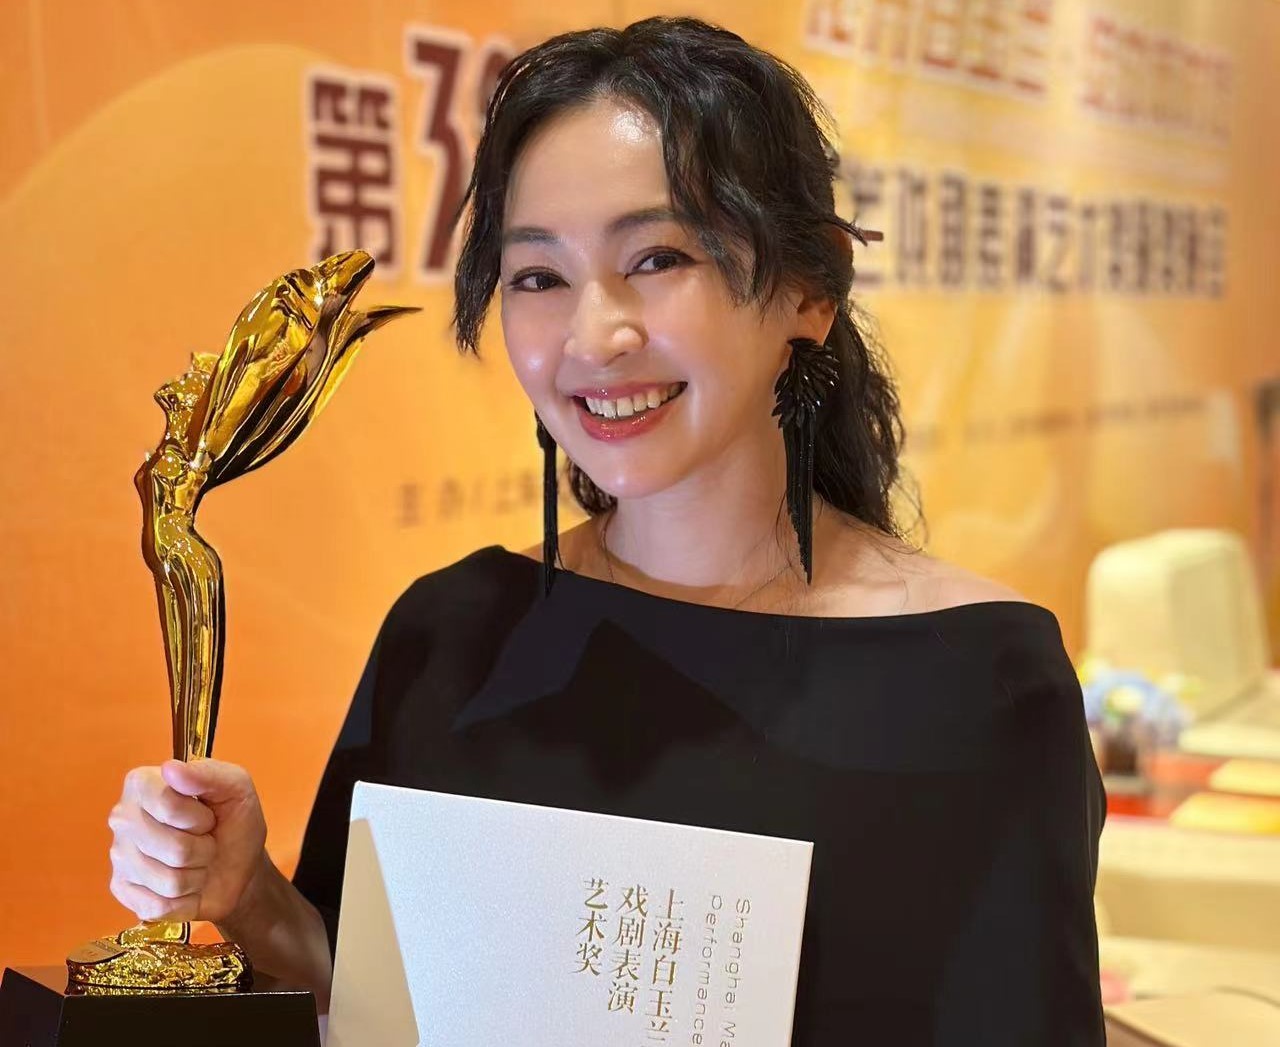 蔡燦得以舞台劇《平如美棠》獲第32屆上海白玉蘭戲劇表演藝術獎配角獎。圖/Asa’s agency提供